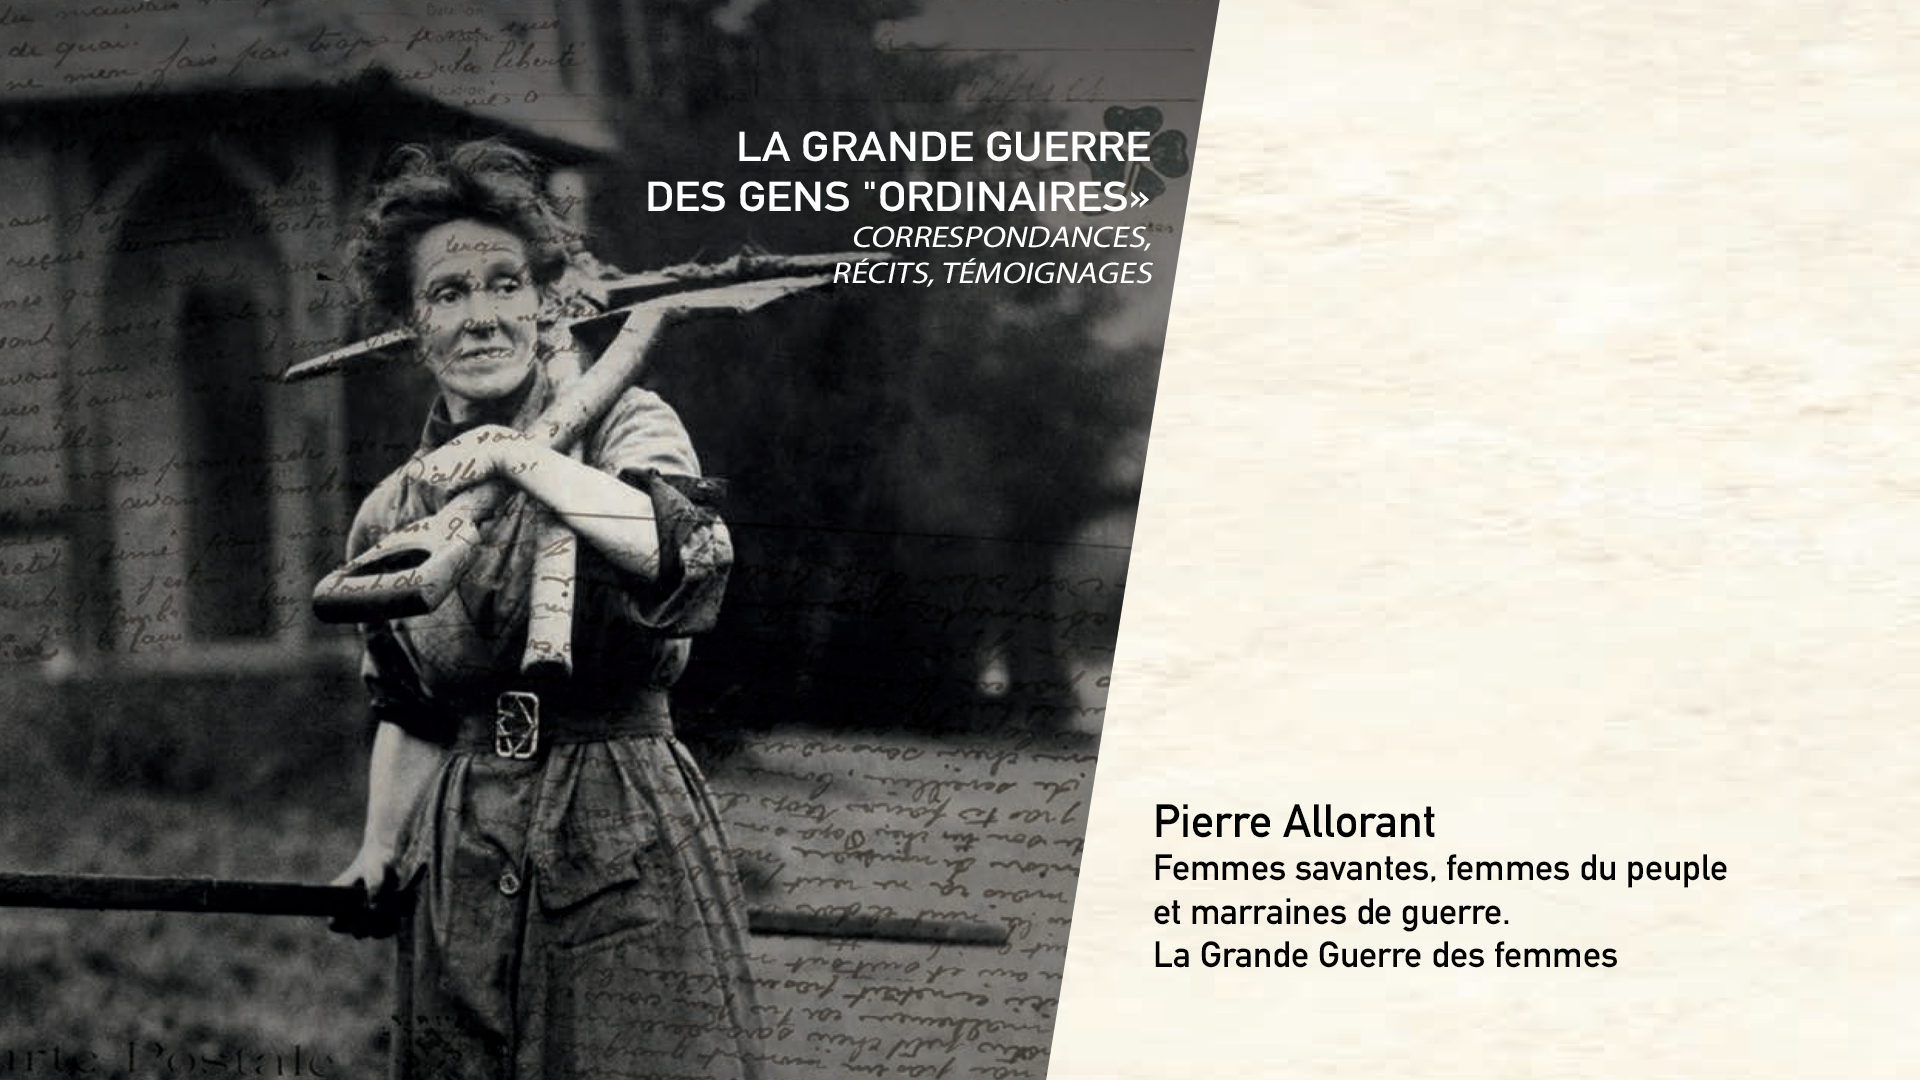 Pierre Allorant - Femmes savantes, femmes du peuple et marraines de guerre. La Grande Guerre des femmes.